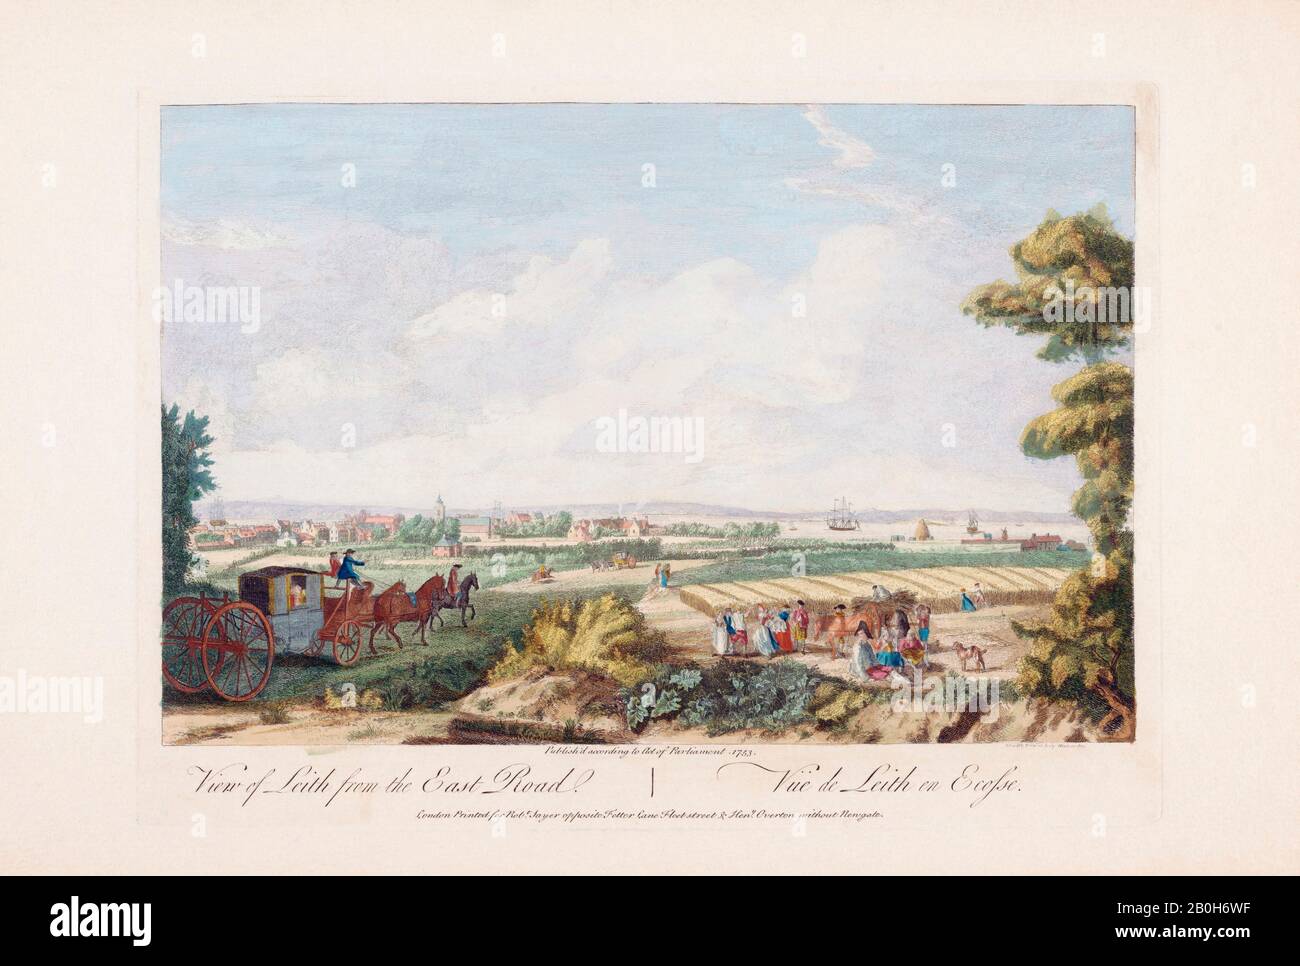 Vue sur Leith depuis la route est. Après une oeuvre du XVIIIe siècle de Paul Sandby. Colorisation ultérieure. Leith, Écosse. Banque D'Images